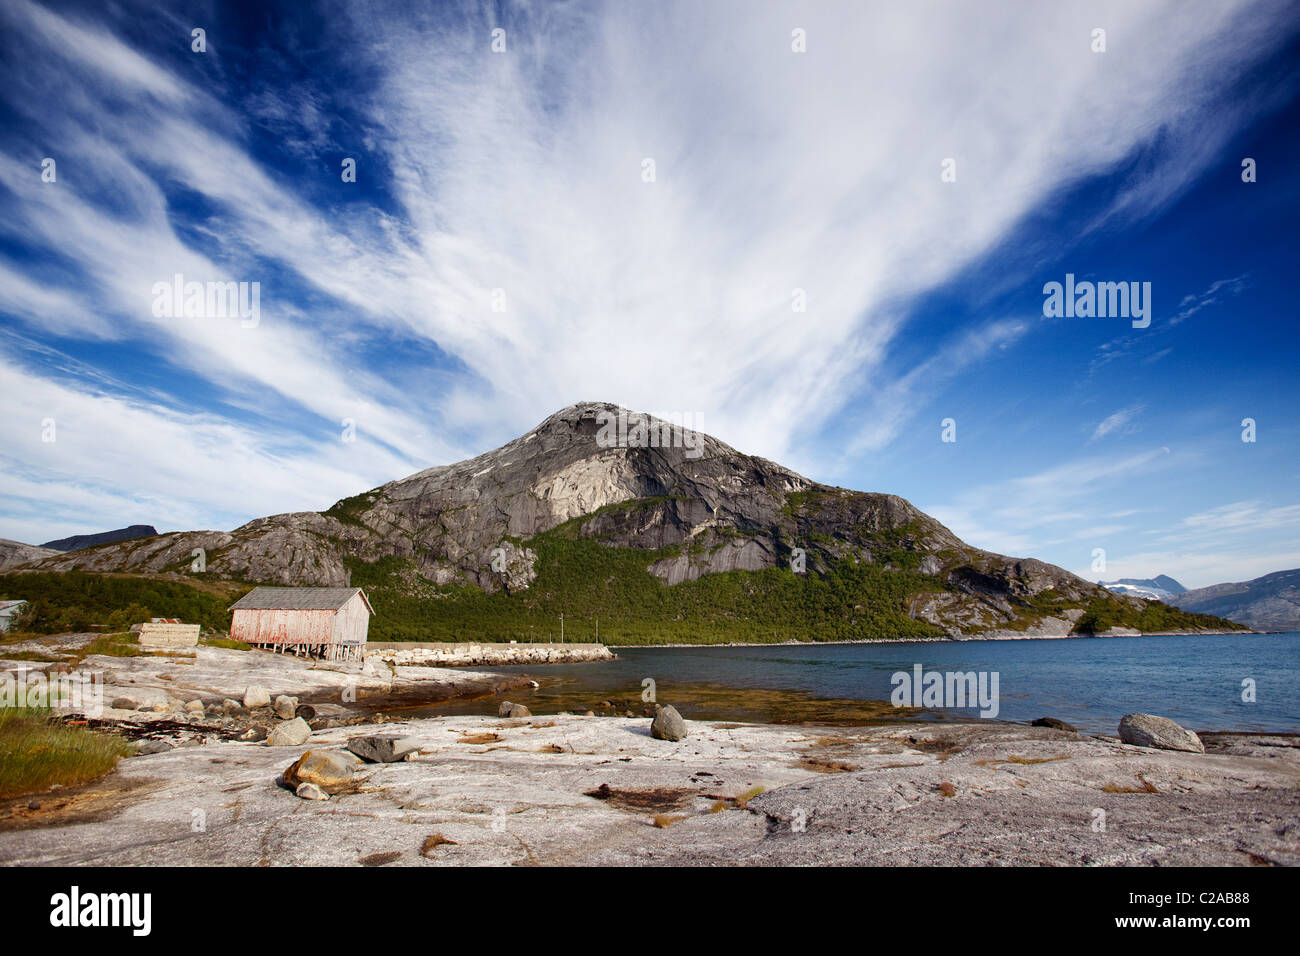 Una montagna sulla costa della Norvegia nei pressi di un piccolo villaggio di pescatori Foto Stock